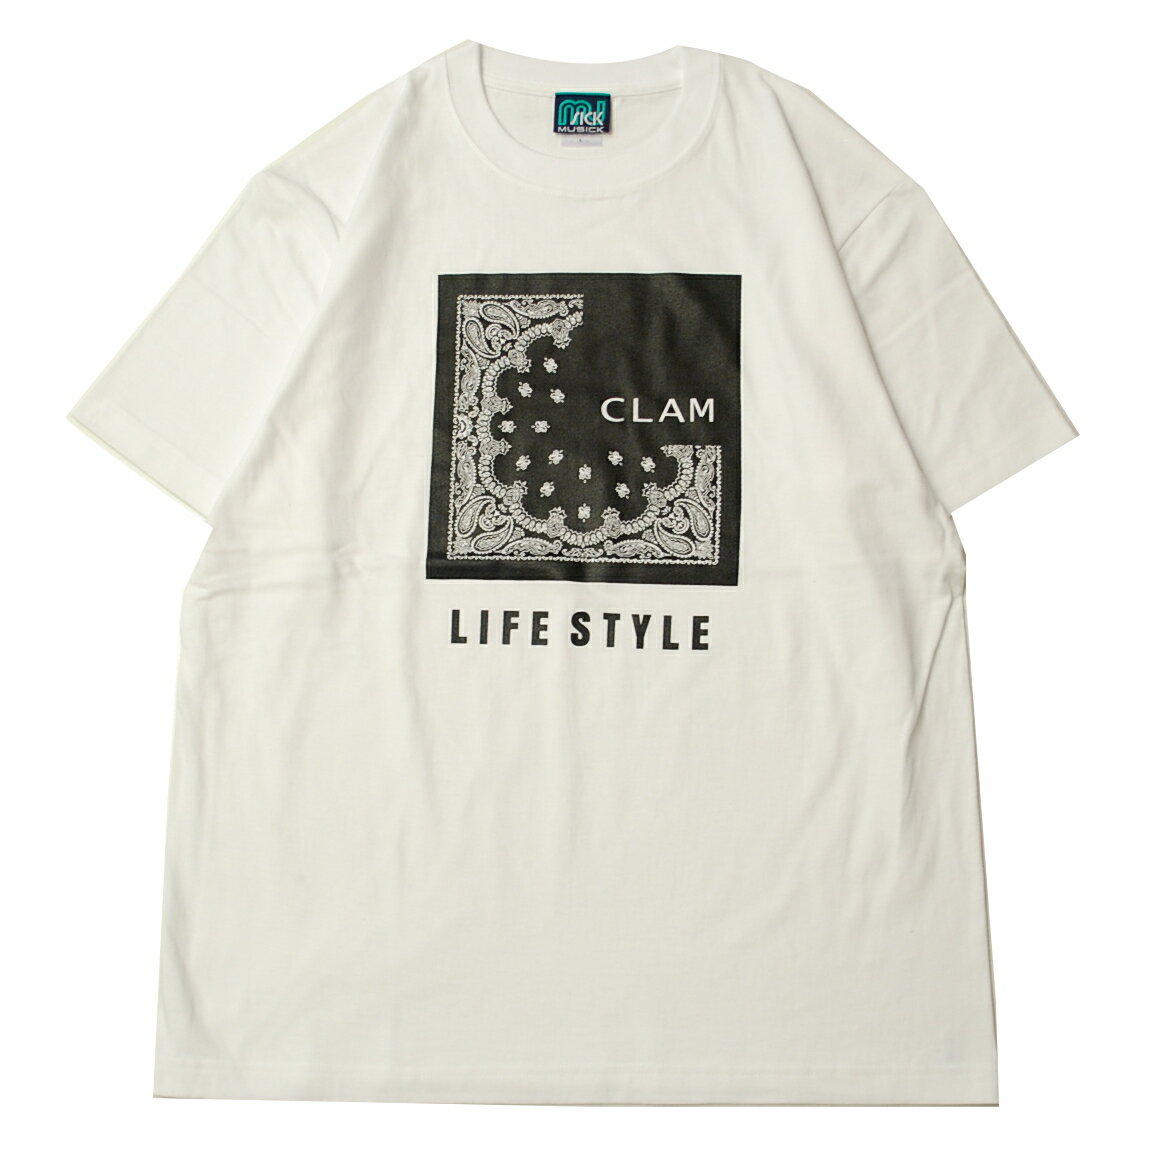 ミュージック MUSICK BANDANA S/S Tシャツ WHITE×BLACK/ホワイト×ブラック 半袖 Tシャツ ペイズリー